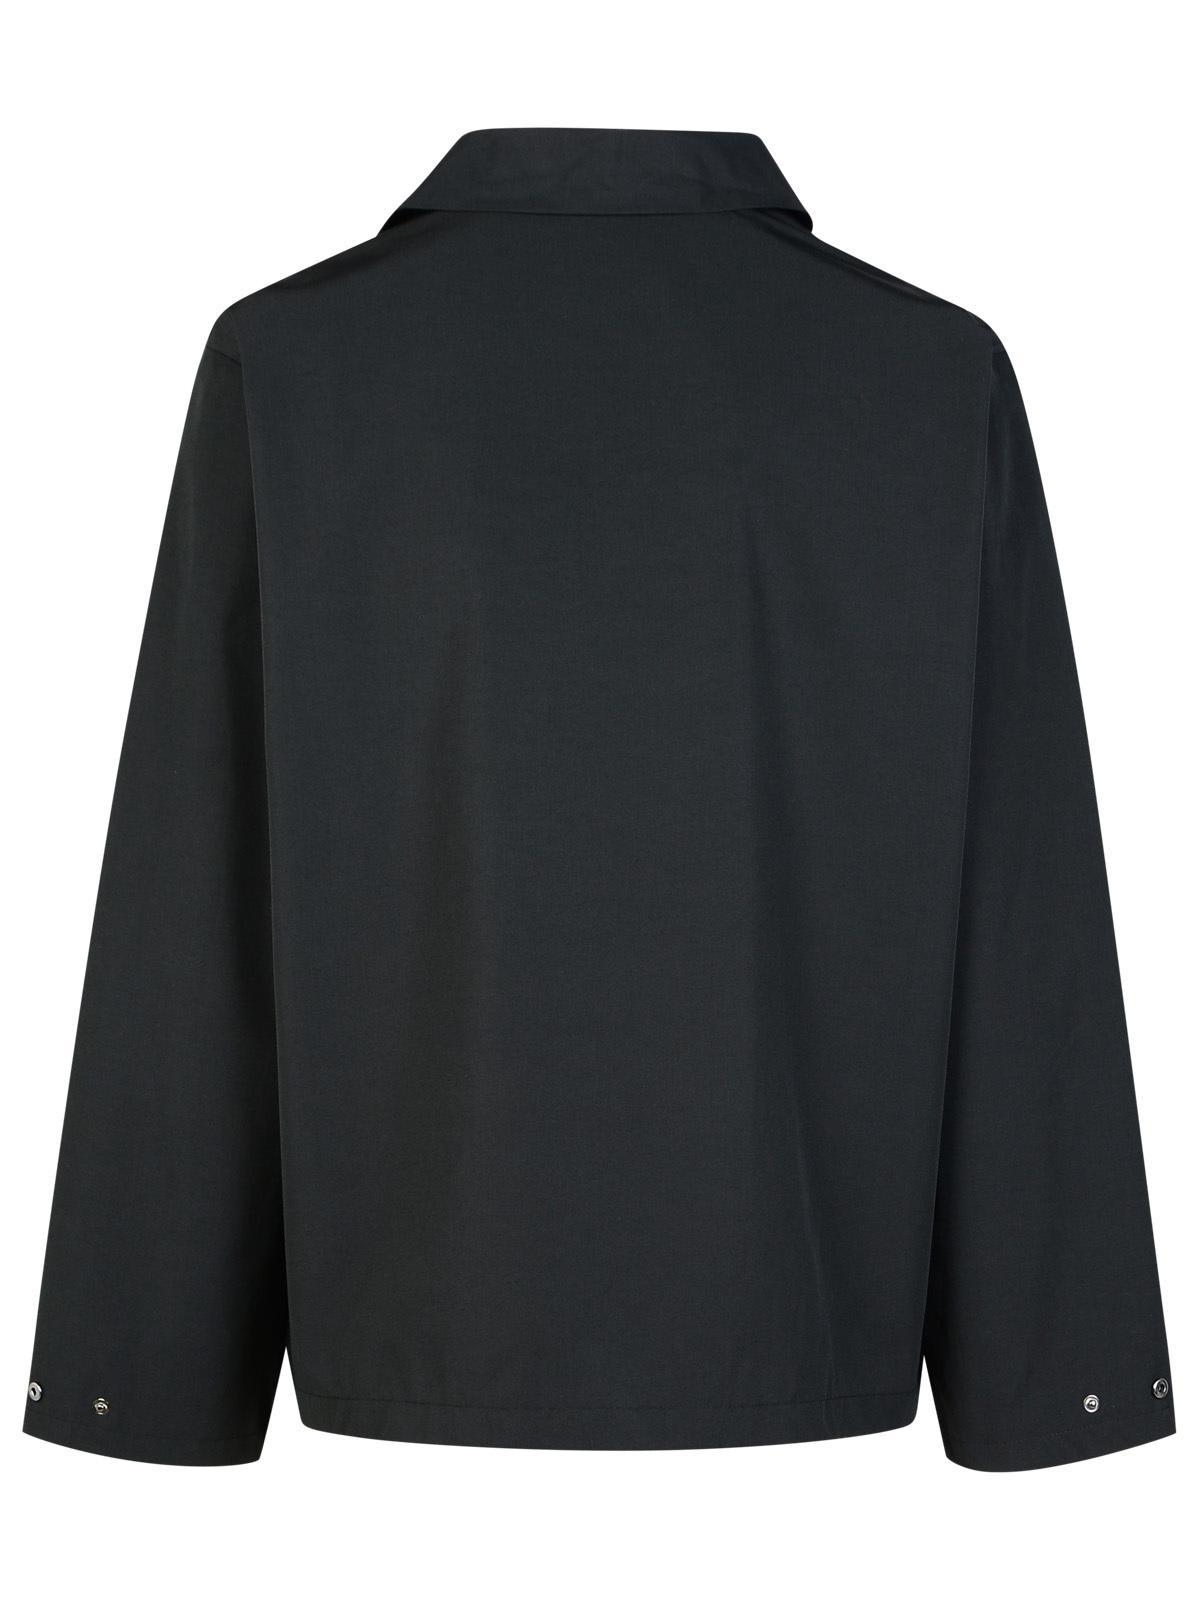 Shop Apc Regis Black Cotton Blend Shirt